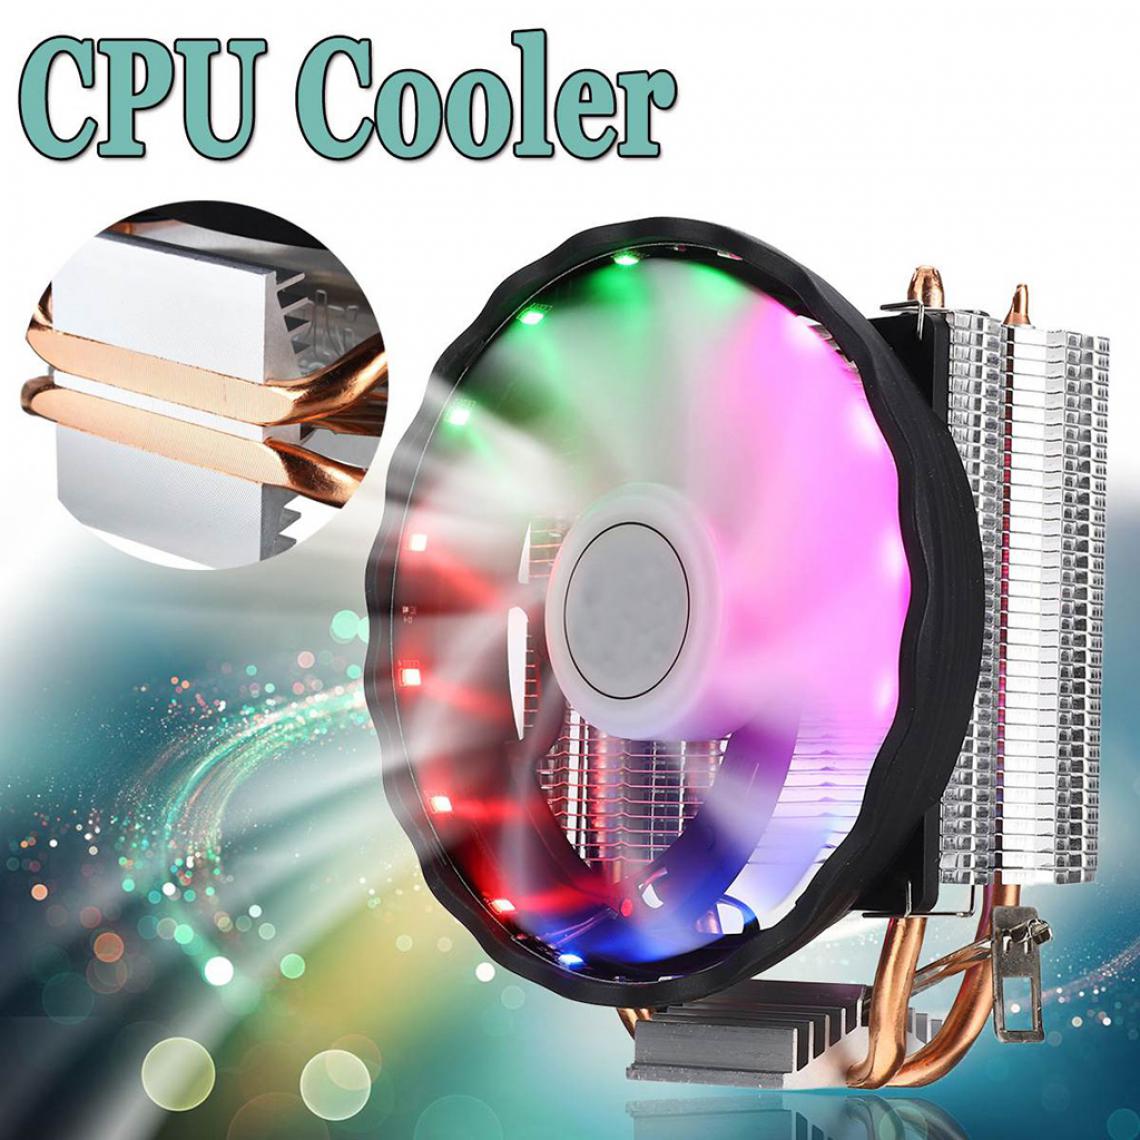 marque generique - LED RGB CPU Refroidisseur 4pin de Refroidissement Radiateur pour 939/940/938/FM1/FM2/AM4/AM3 /AM3/AM2 /AM2, AMDX2X3X4/A10/A8/A6/A4/Athlon- - Grille ventilateur PC